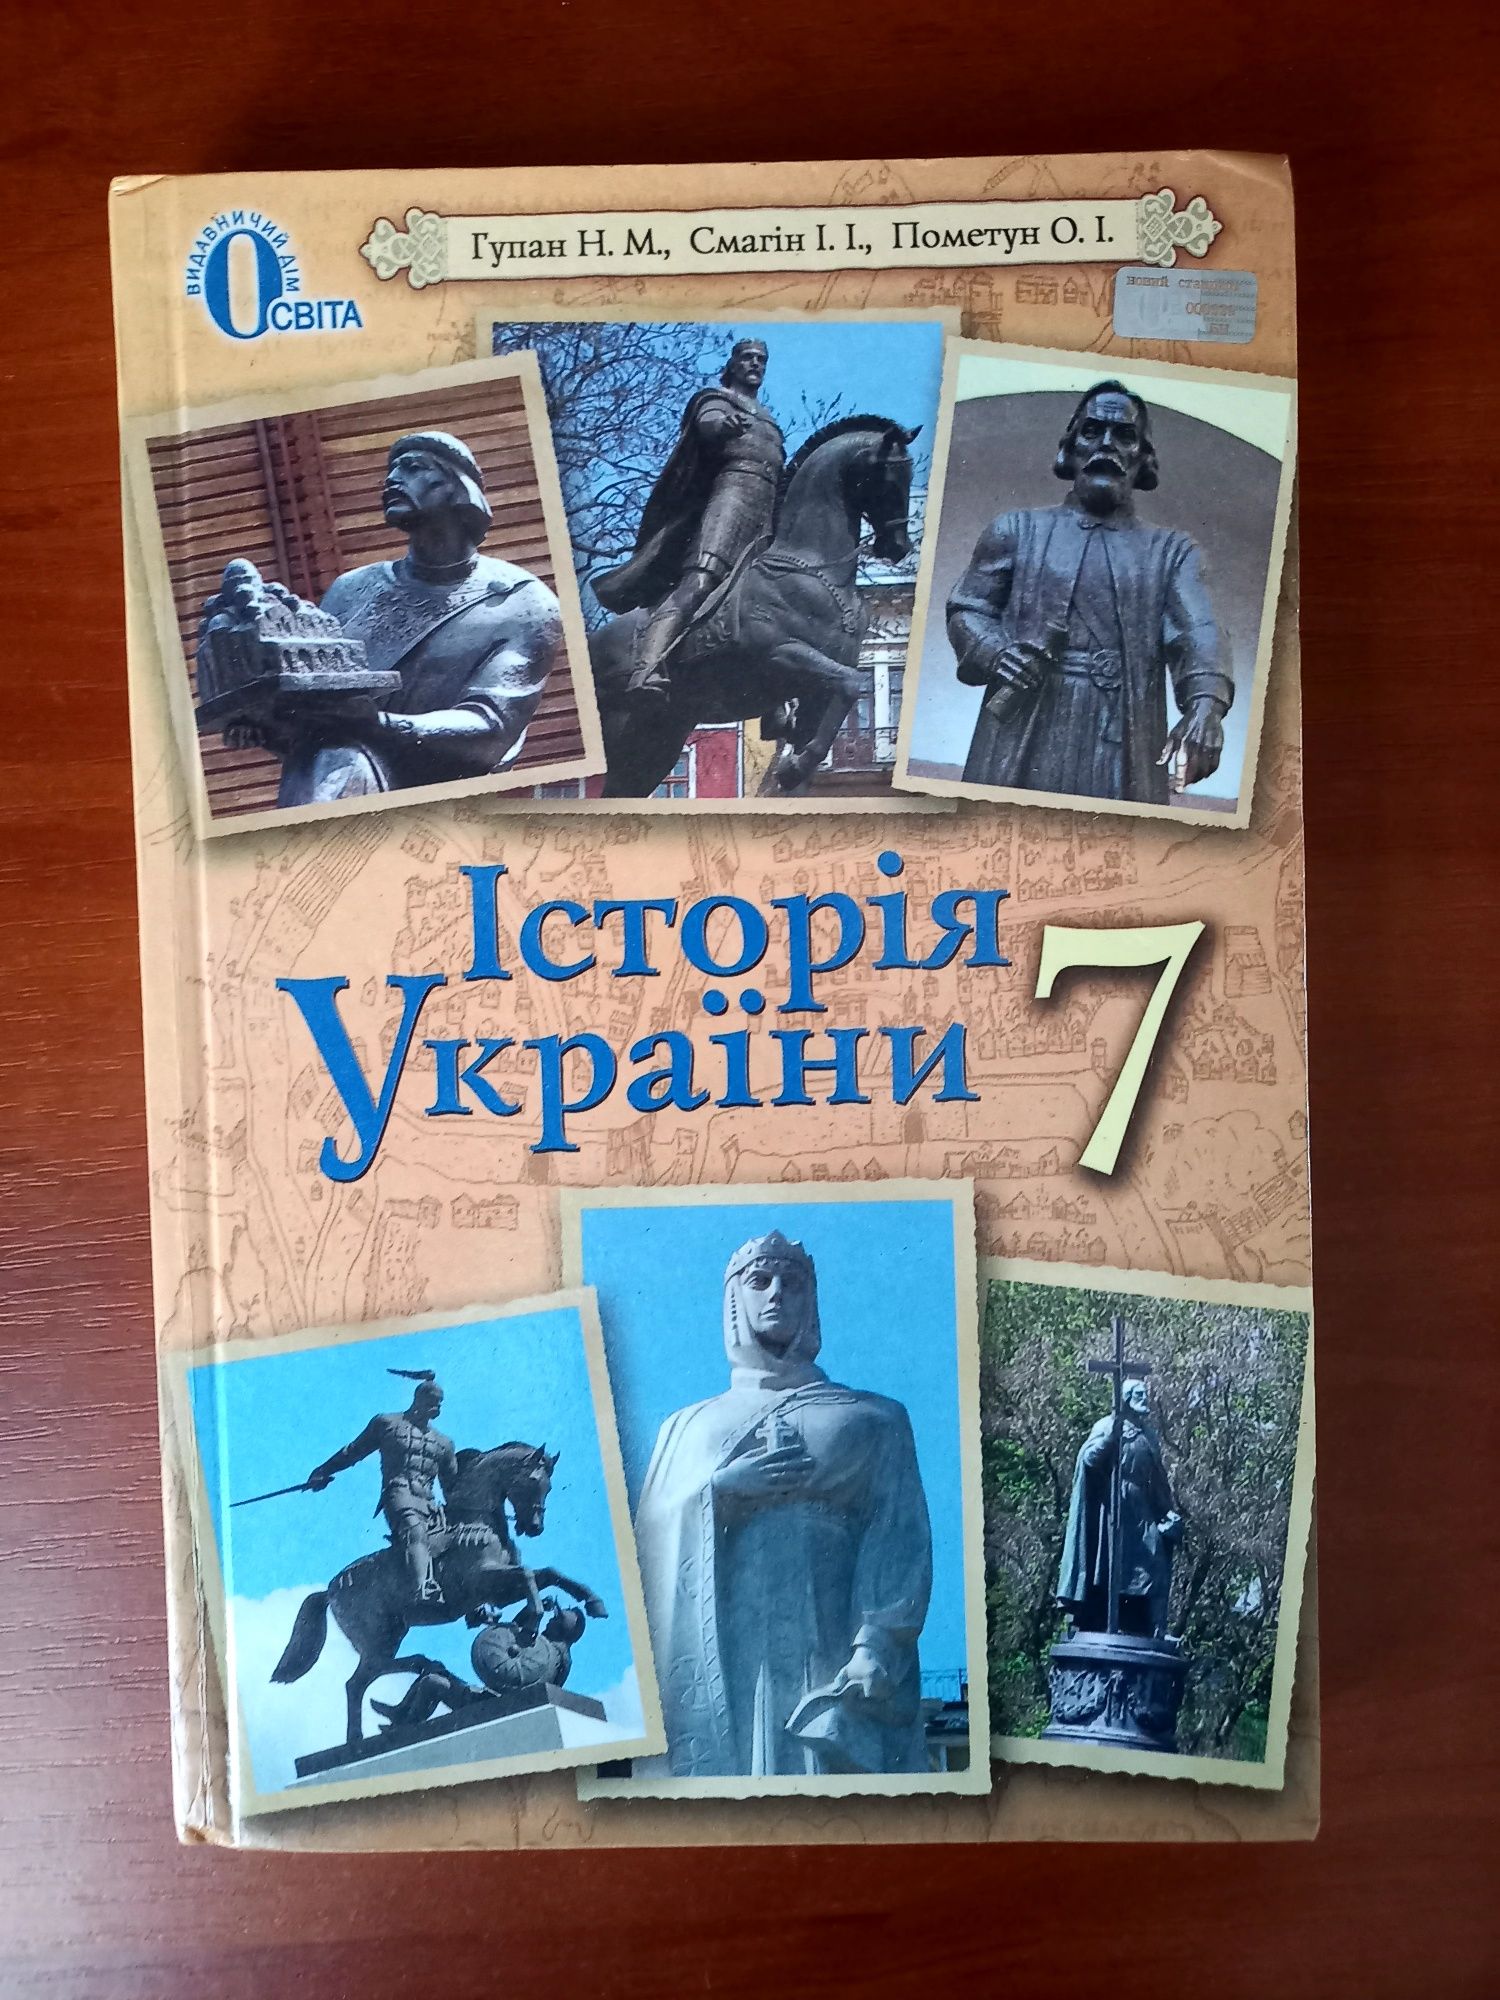 Продам учебник по истории Украины, 7 класс, Гупан Н.М